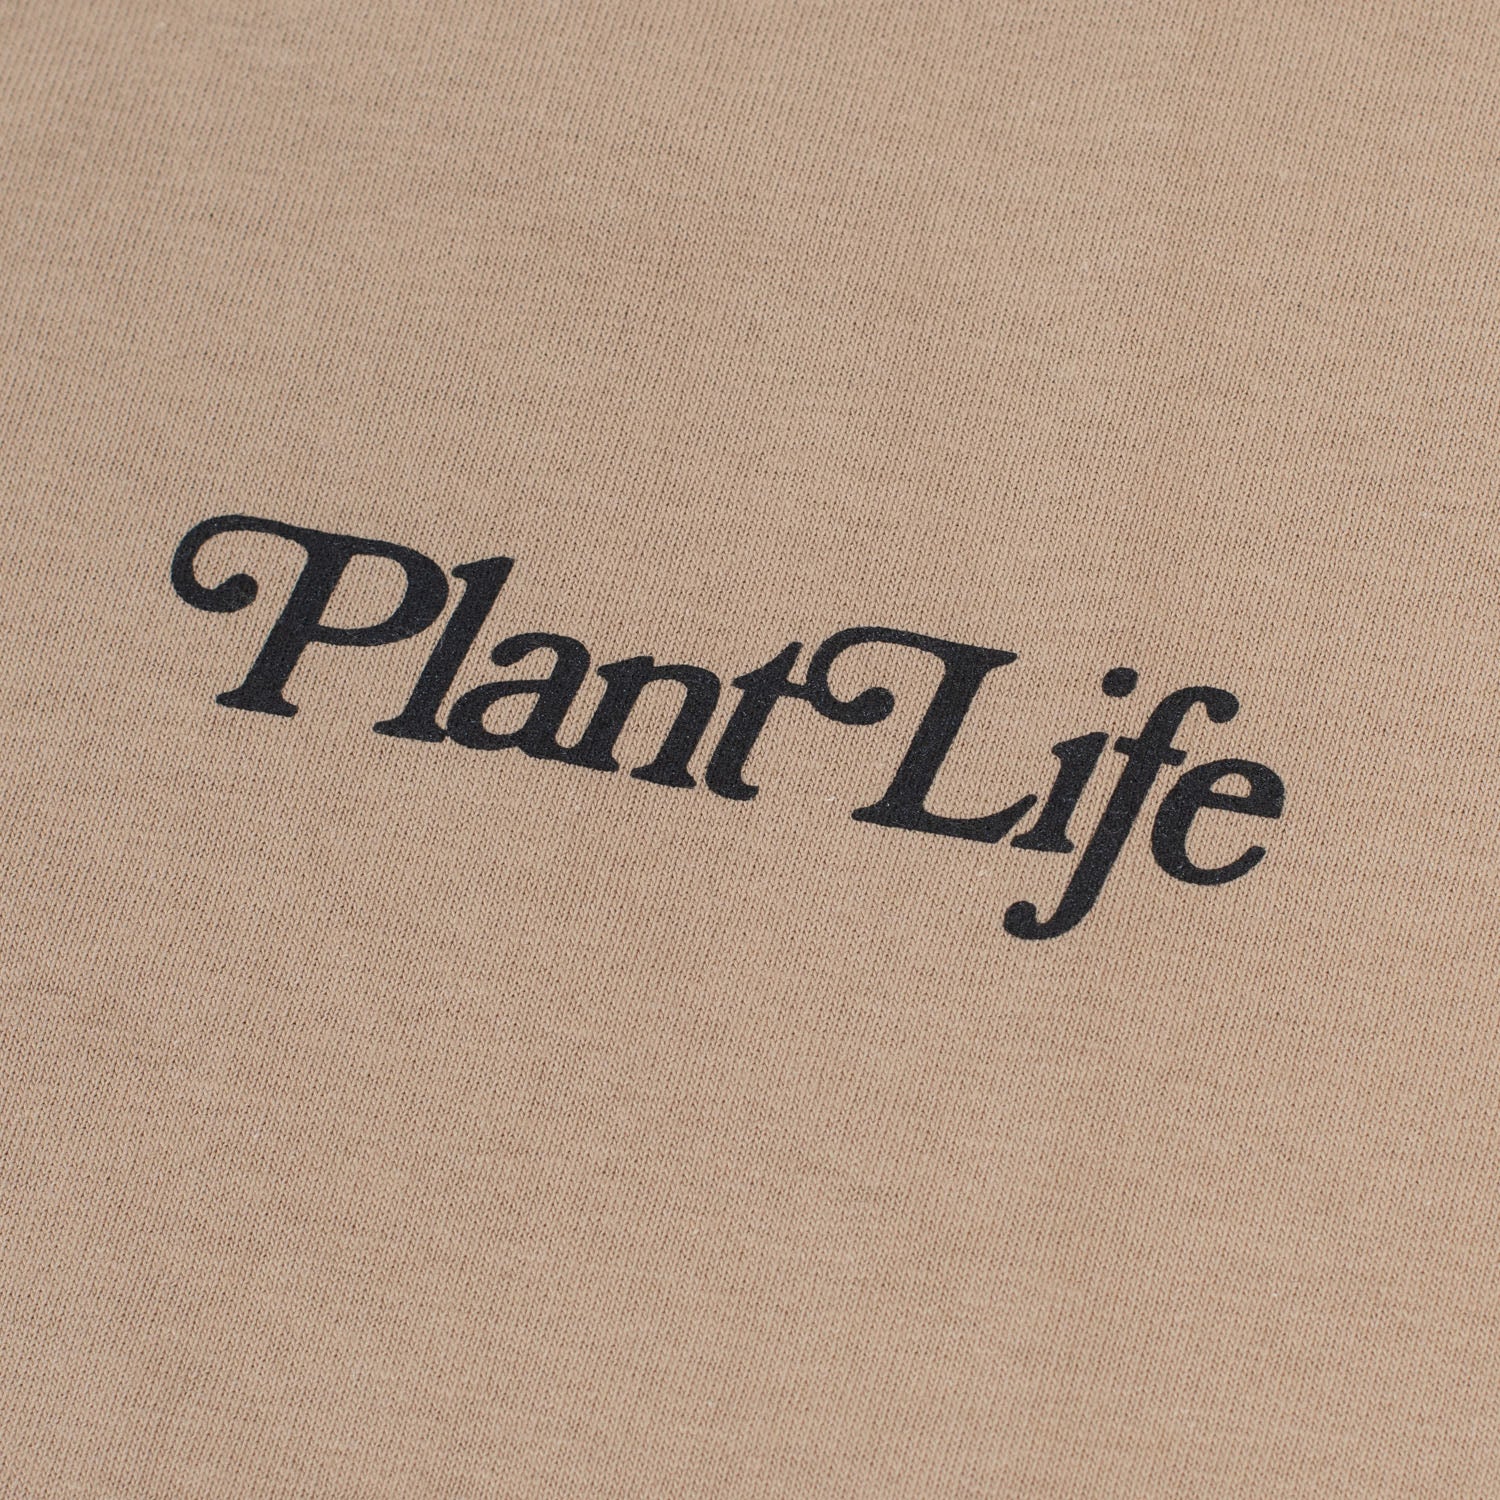 Plant Life Tee (Tan)